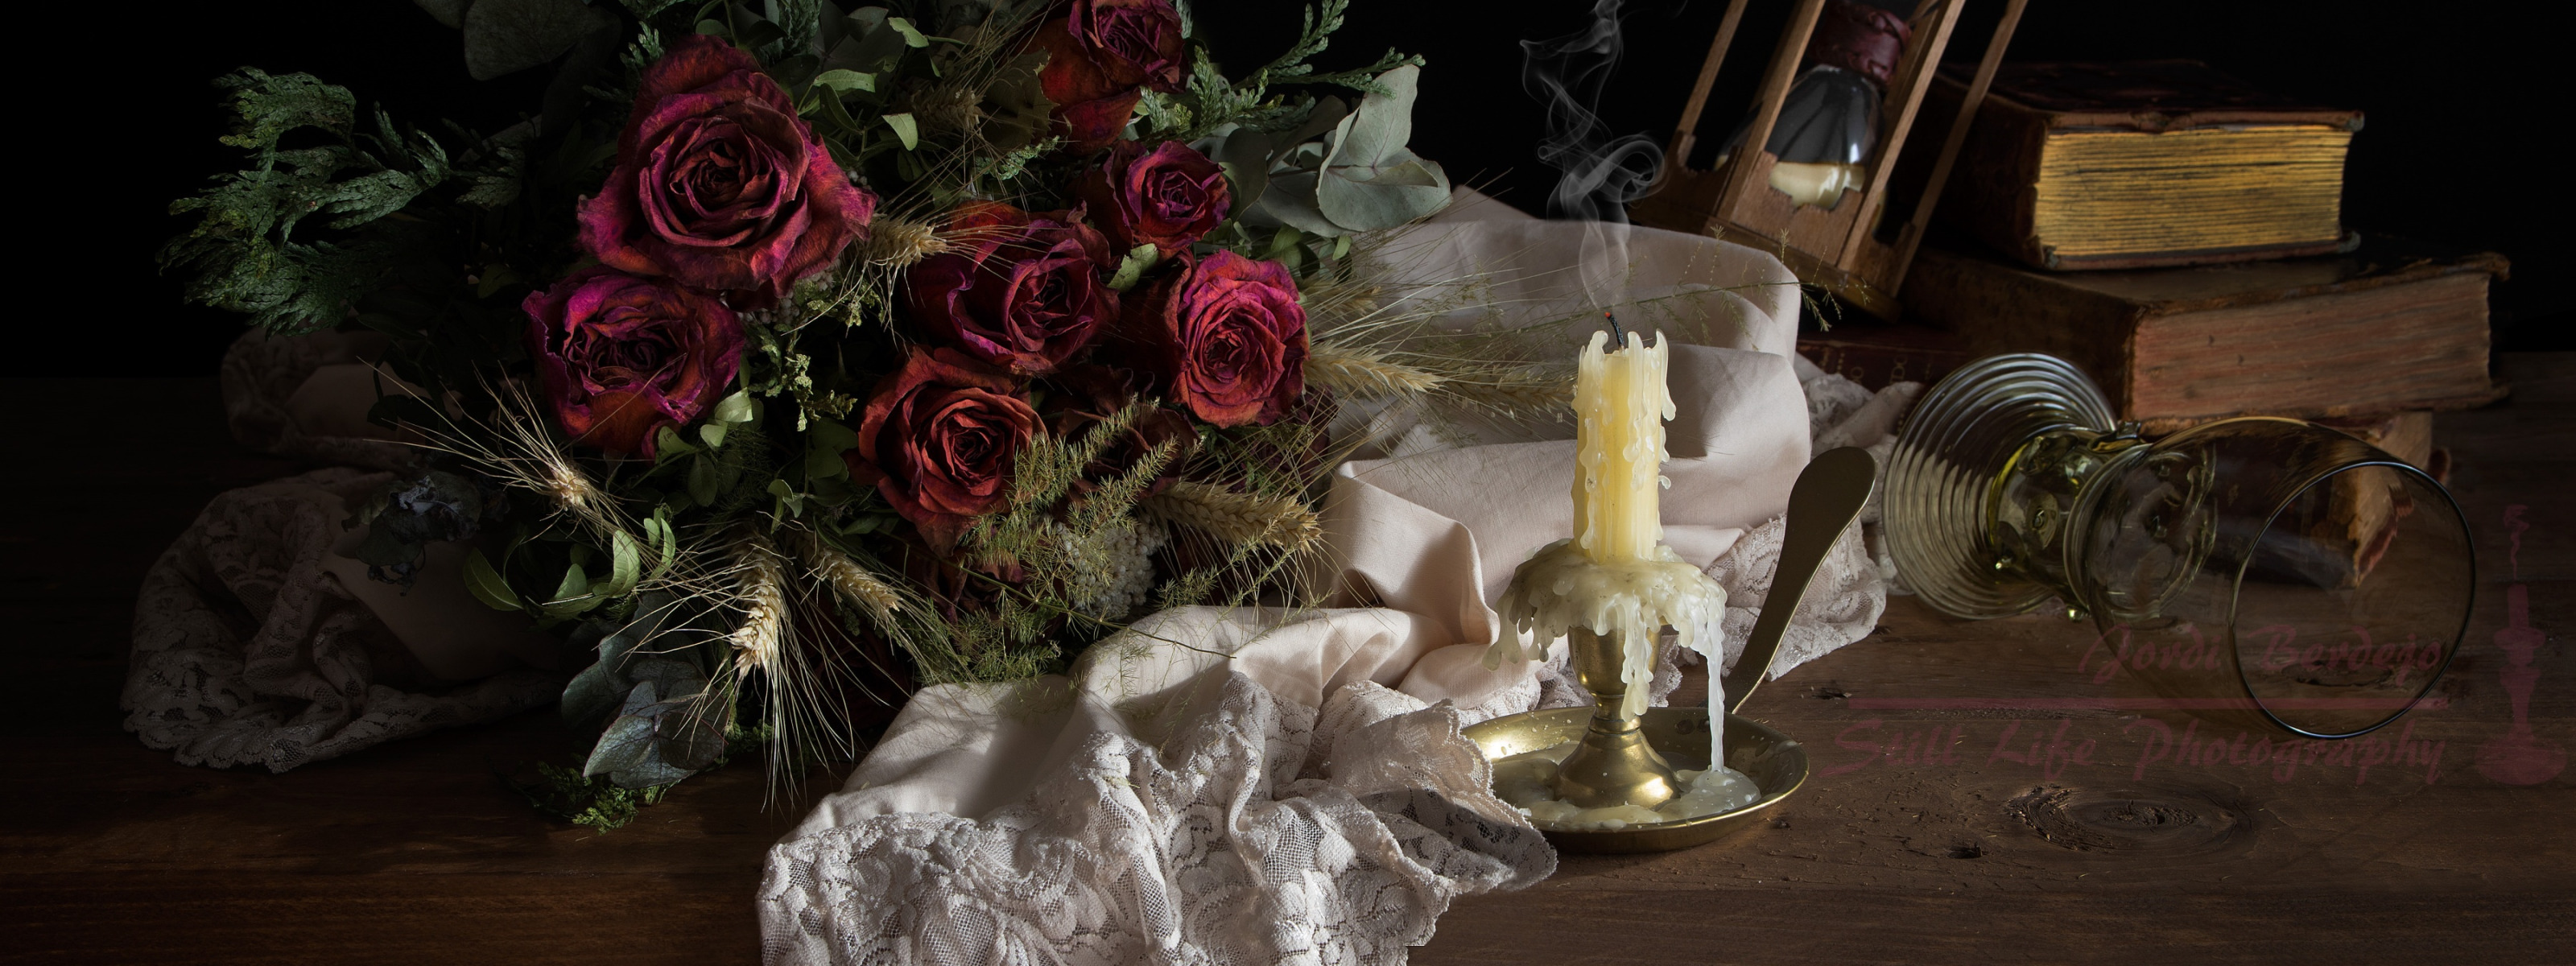 Песня на столе коньяк и свечи догорают. Натюрморт со свечой. Цветы и свечи на столе. Розы и свечи.